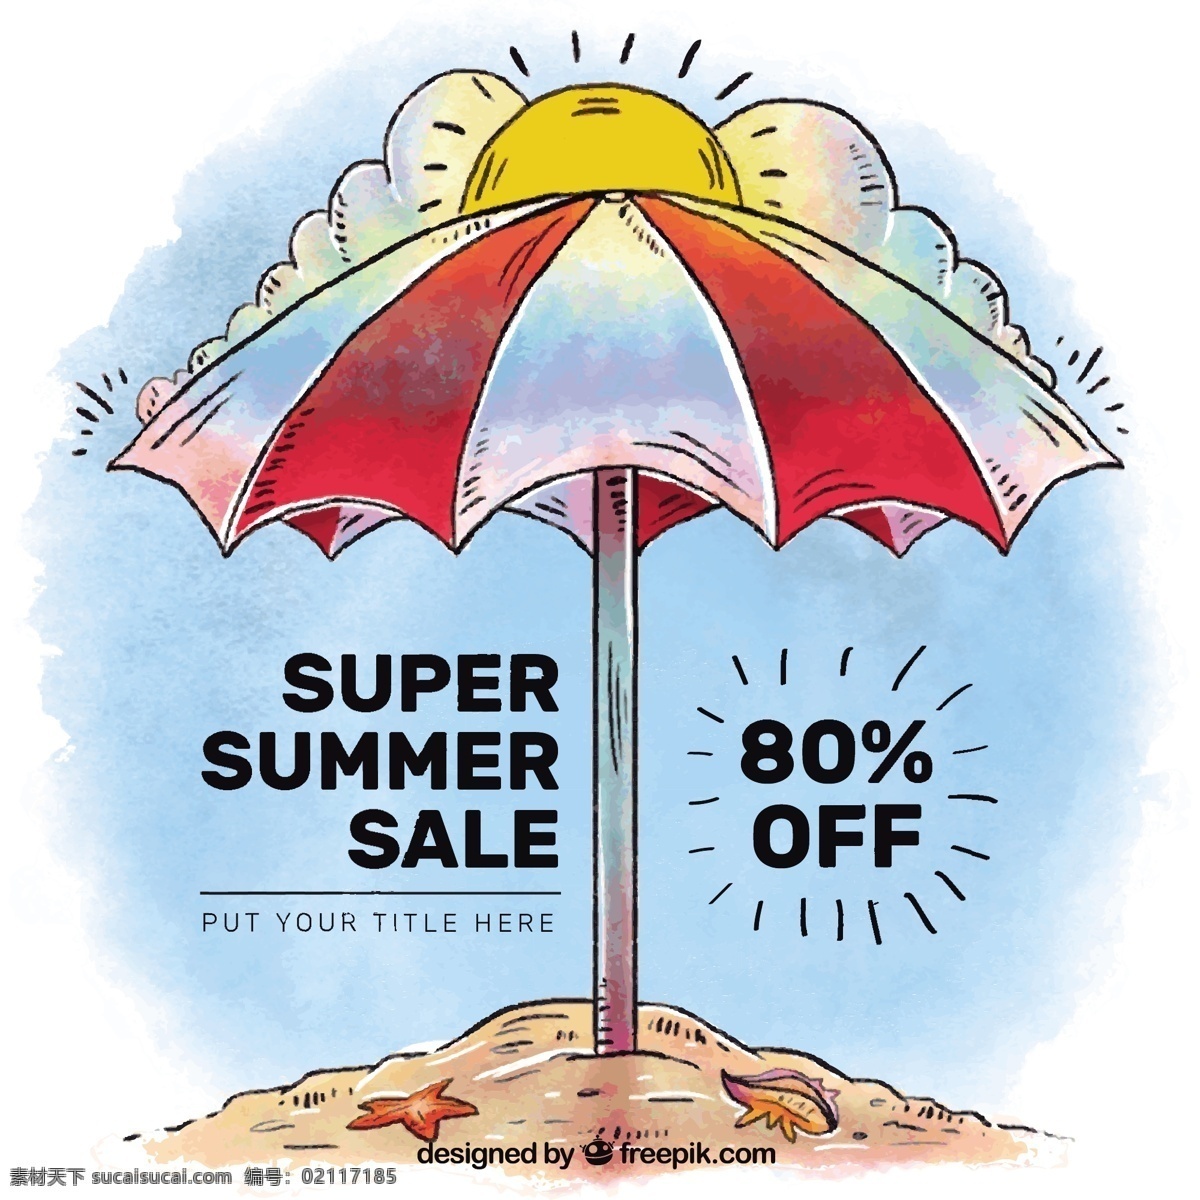 沙滩伞 销售 水彩 背景 手 夏季 海 海滩 阳光 购物 手绘 促销 折扣 度假 价格 提供 商店 绘画 雨伞